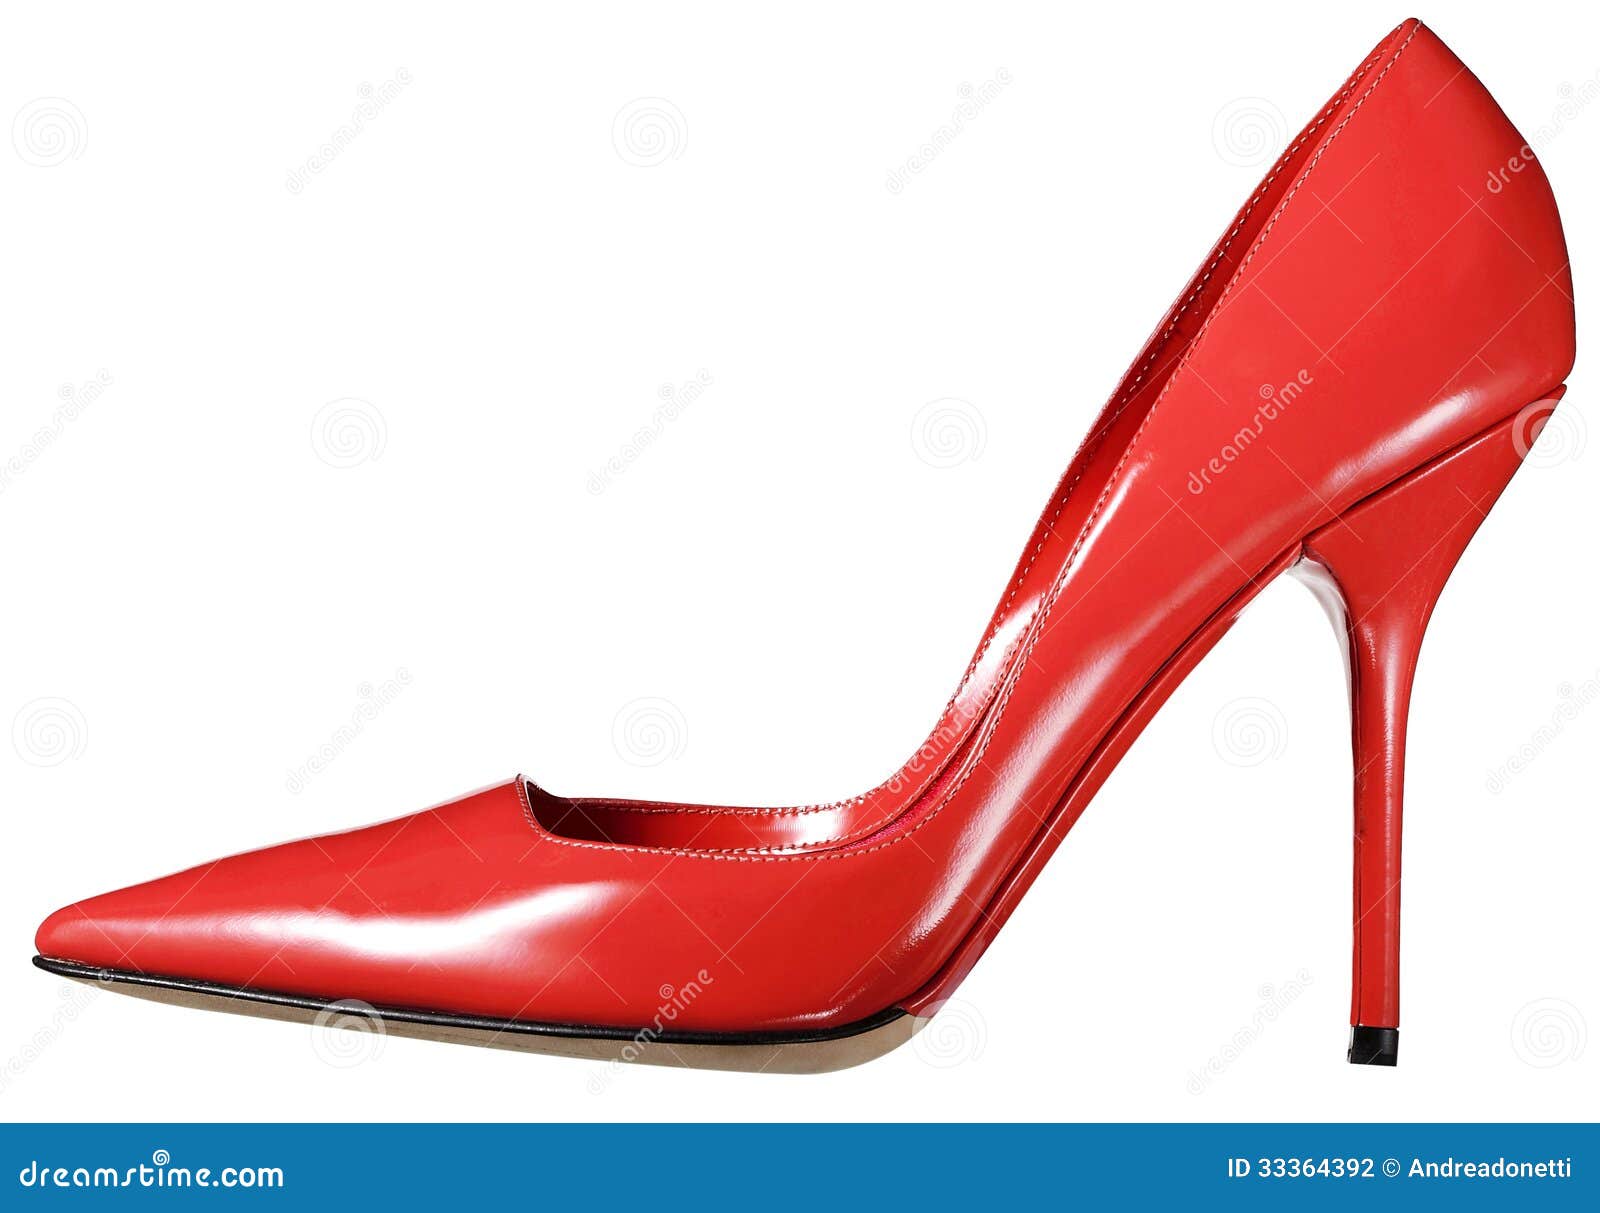 Chaussure En Cuir Rouge Simple De Cour De Dames Photographie stock ...